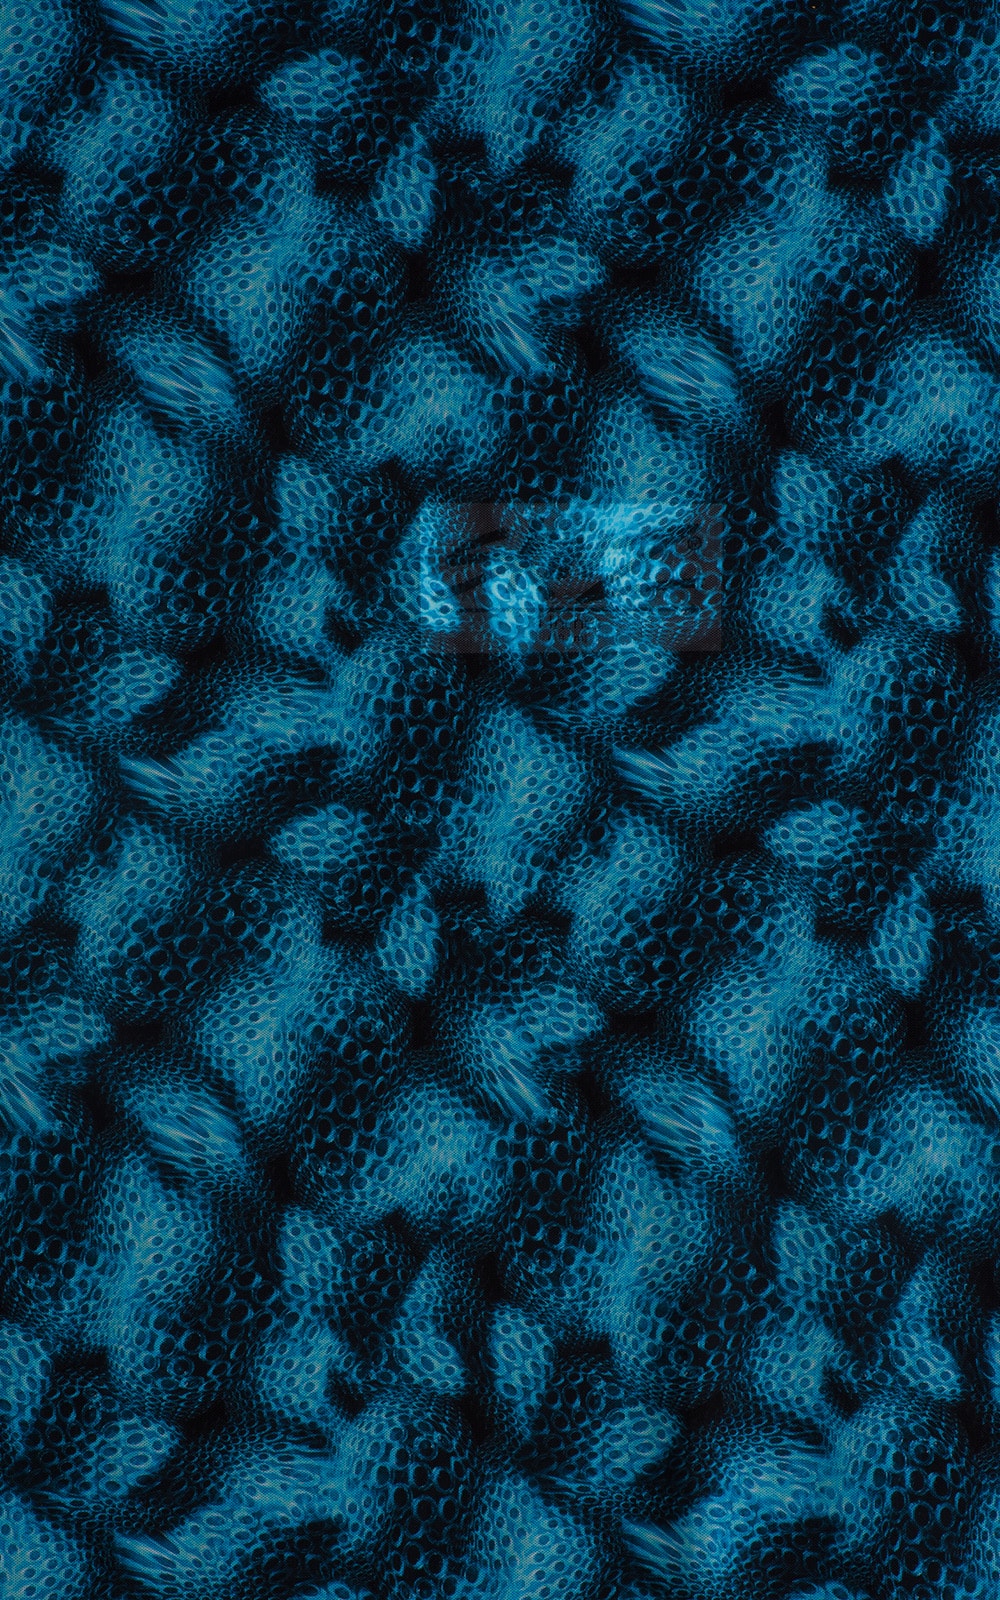 Extreme Low Square Cut Swim Trunks in Semi Sheer Eros Printed Mesh Fabric